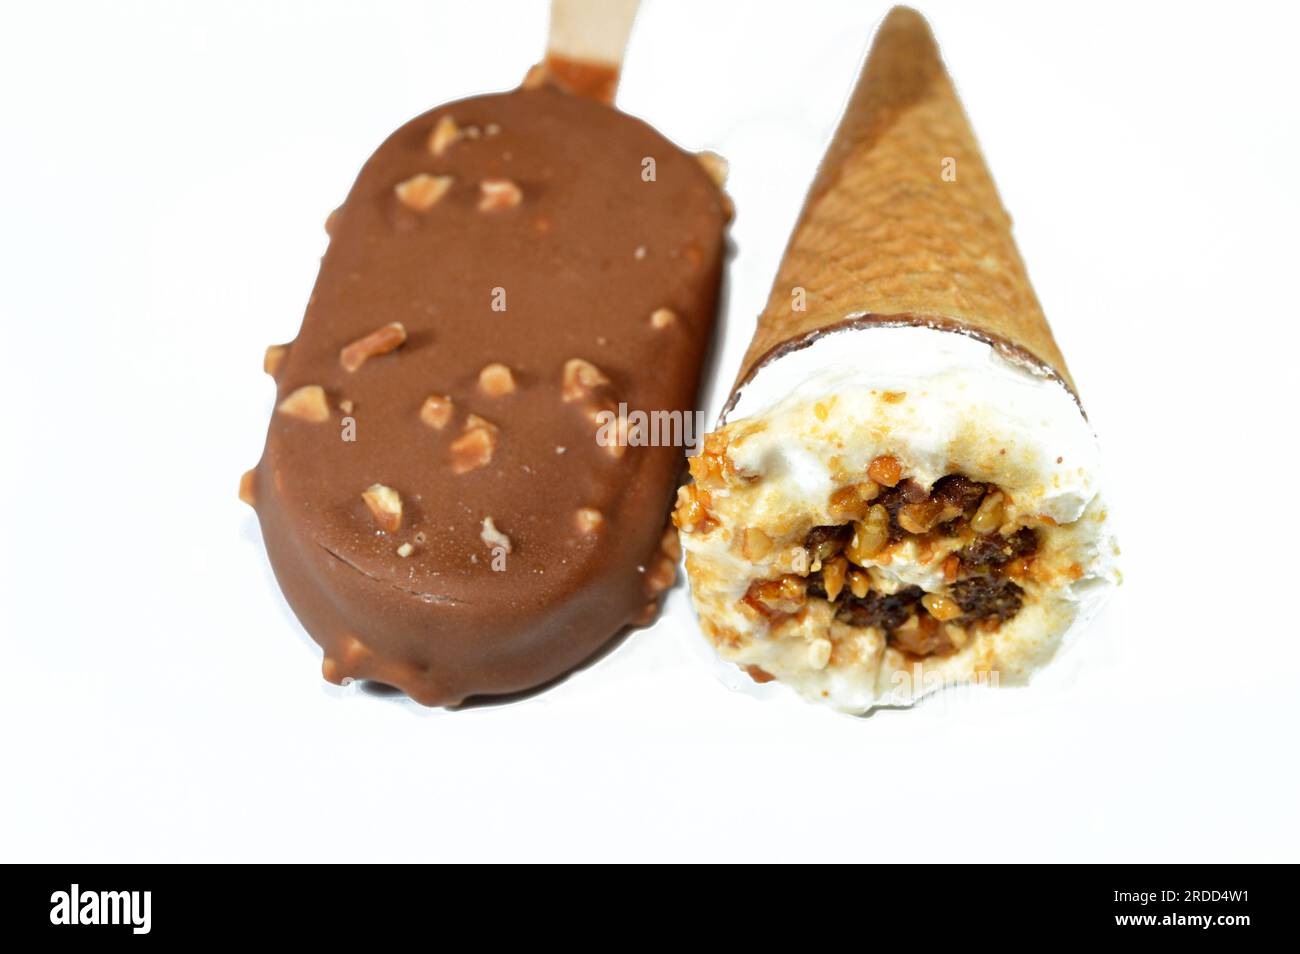 Eiscreme-Vanille-Teller mit Schokoladenstückchen, Nüssen und Karamell in knusprigen Waffeln und Vanilleeis, beschichtet und bedeckt Stockfoto